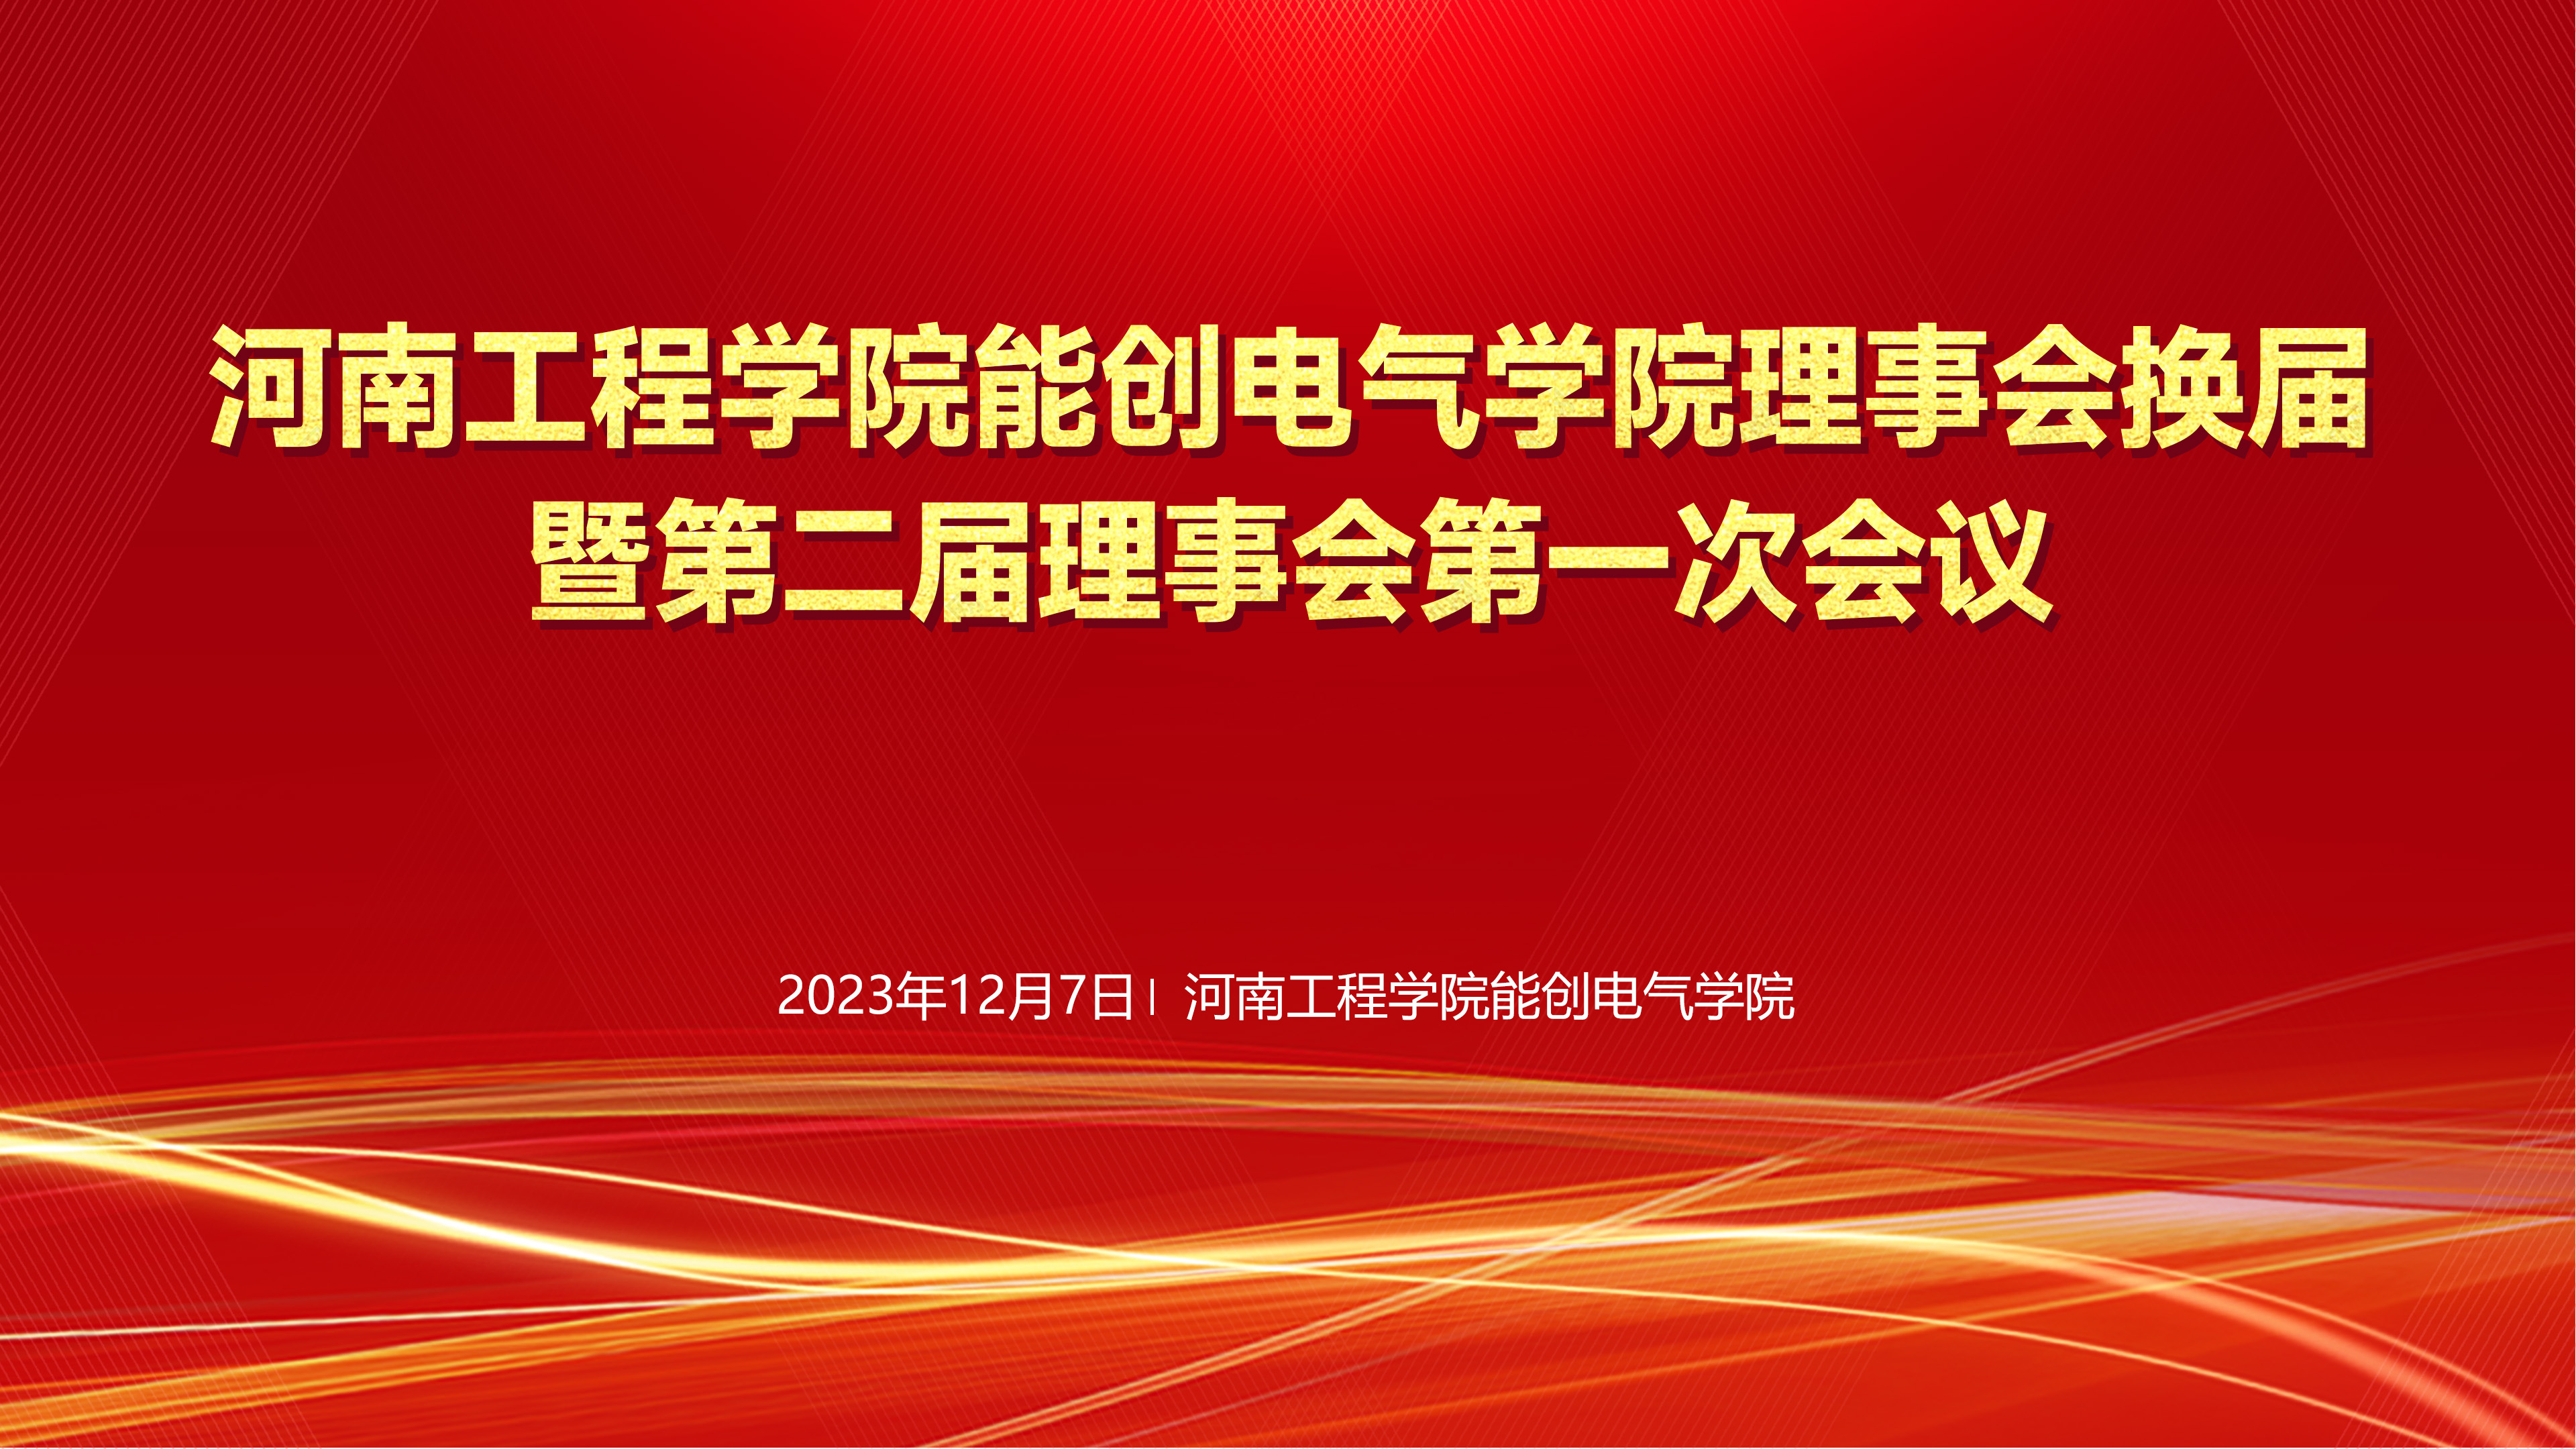 河南工程学院能创电气学院理事会换届暨第二届理事会第一次会议在河南工程学院隆重举行